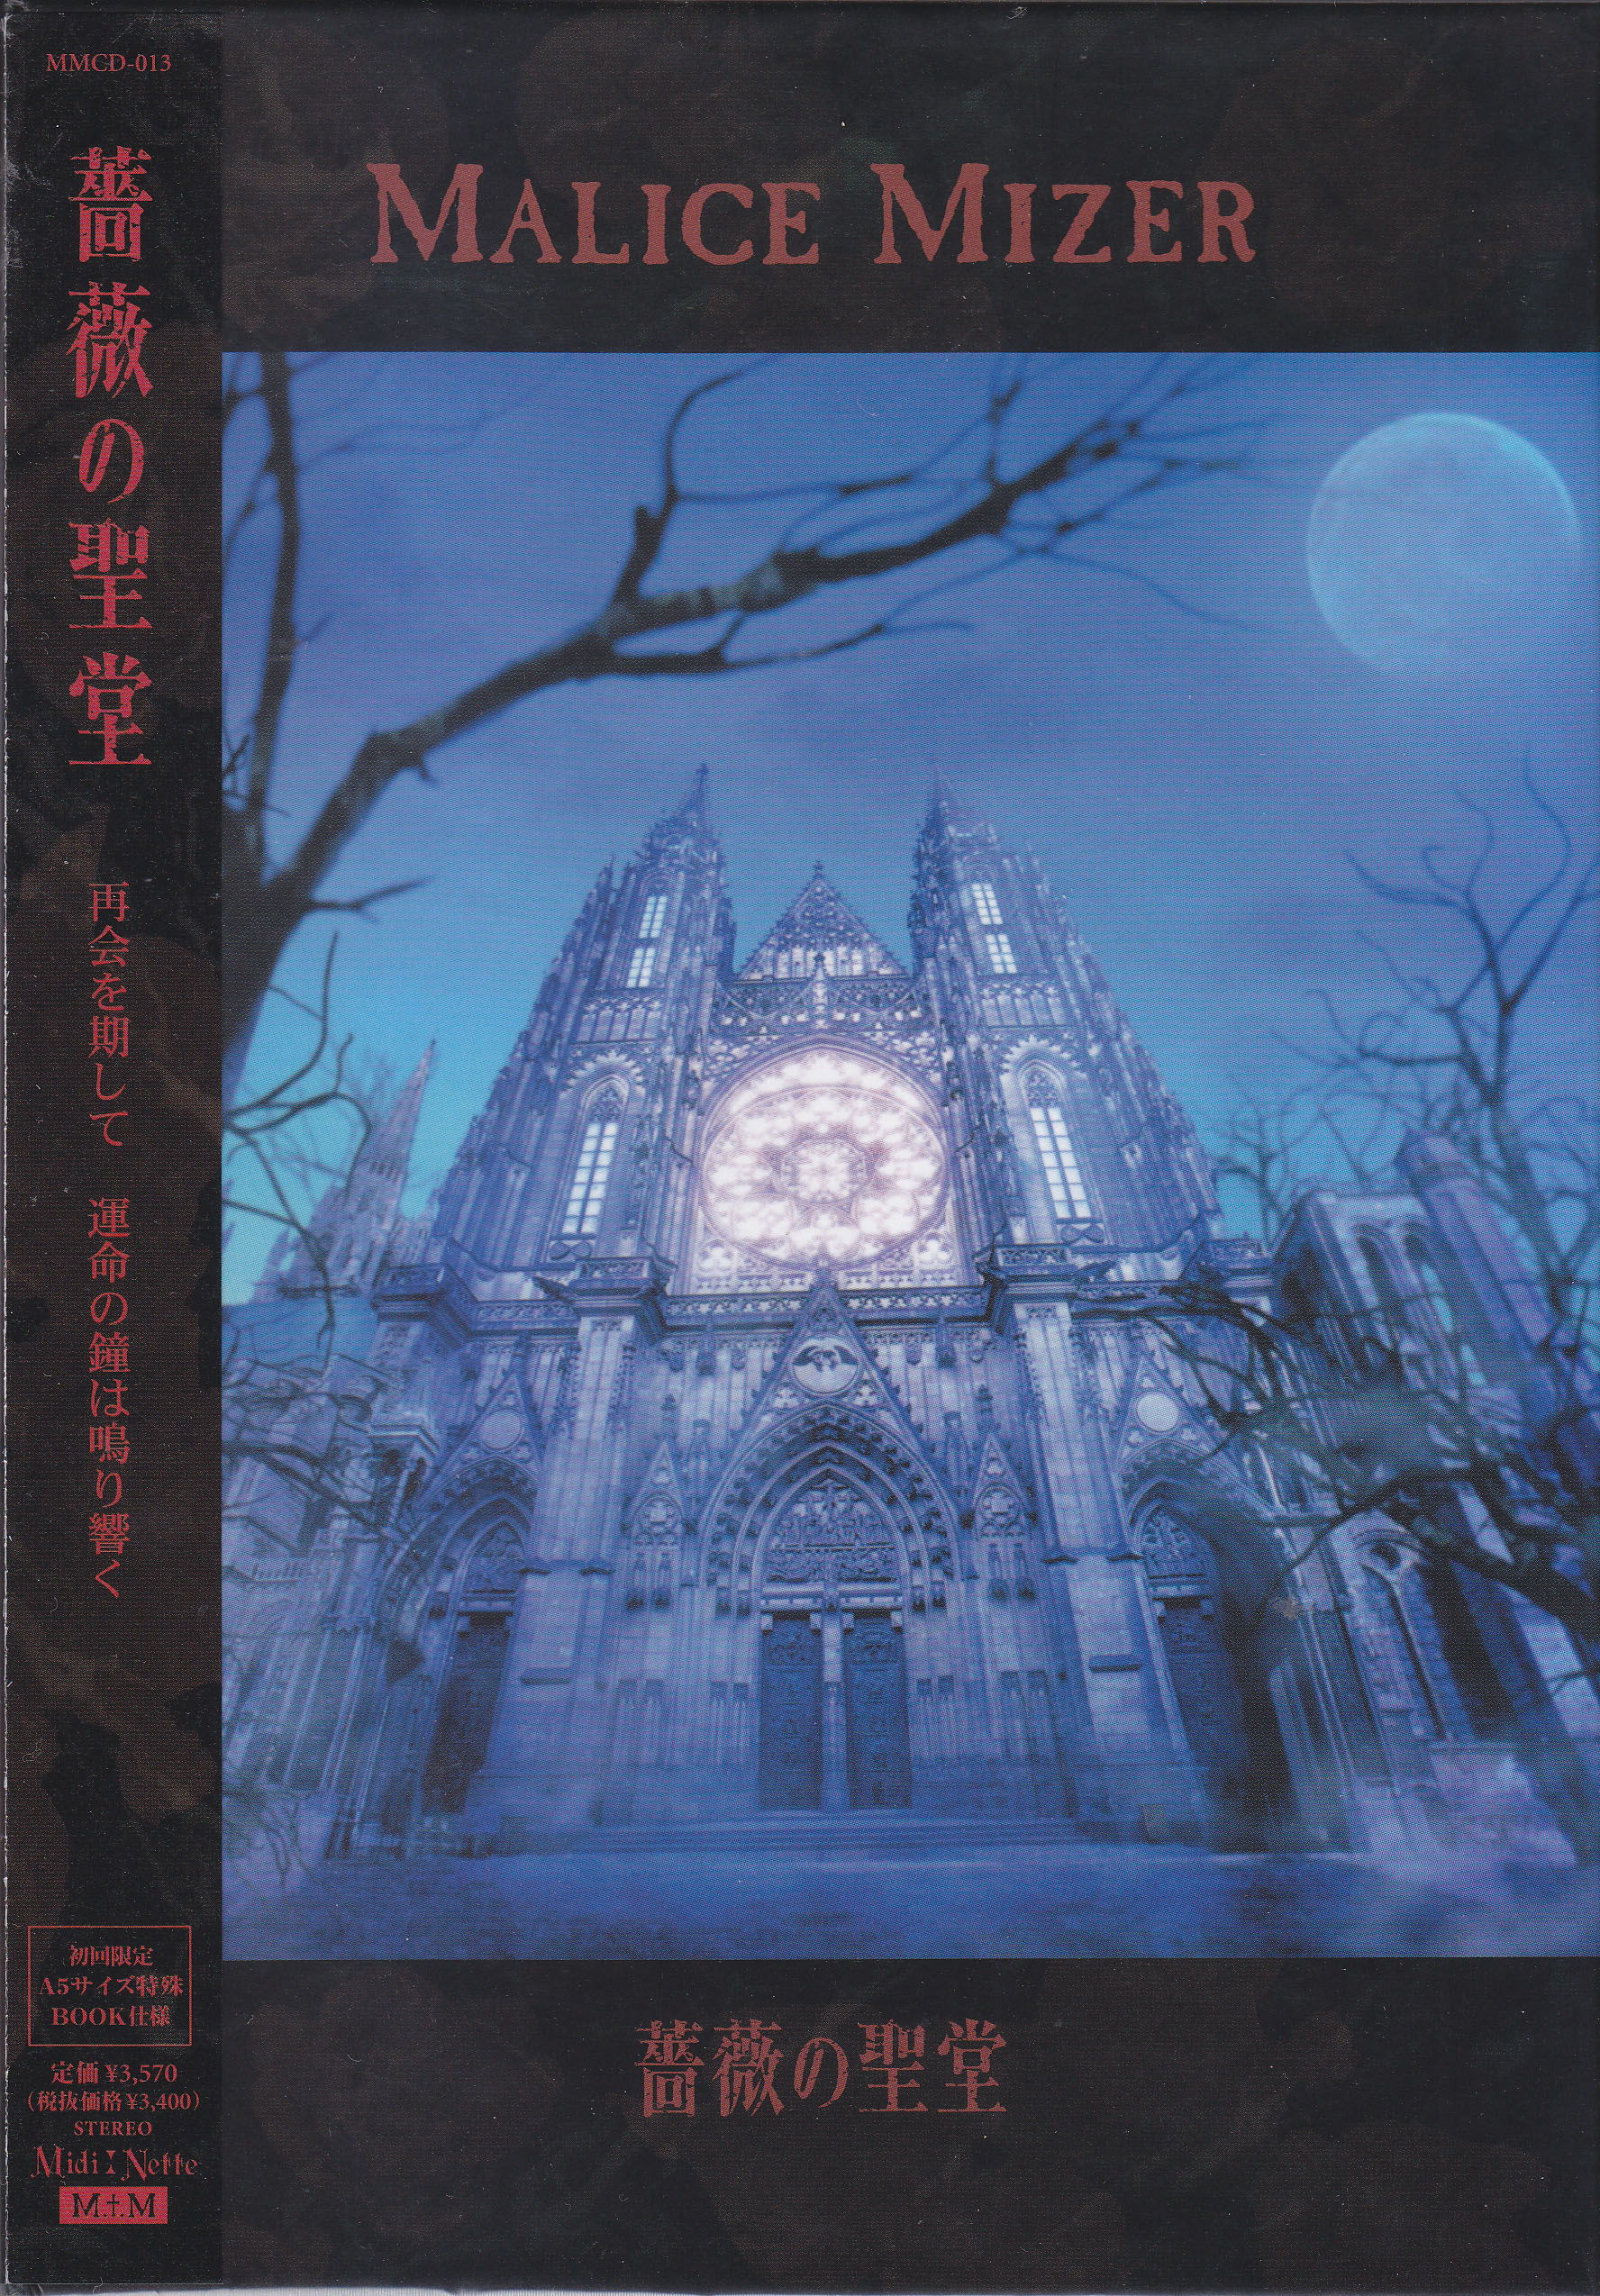 マリスミゼル の CD 薔薇の聖堂 初回盤